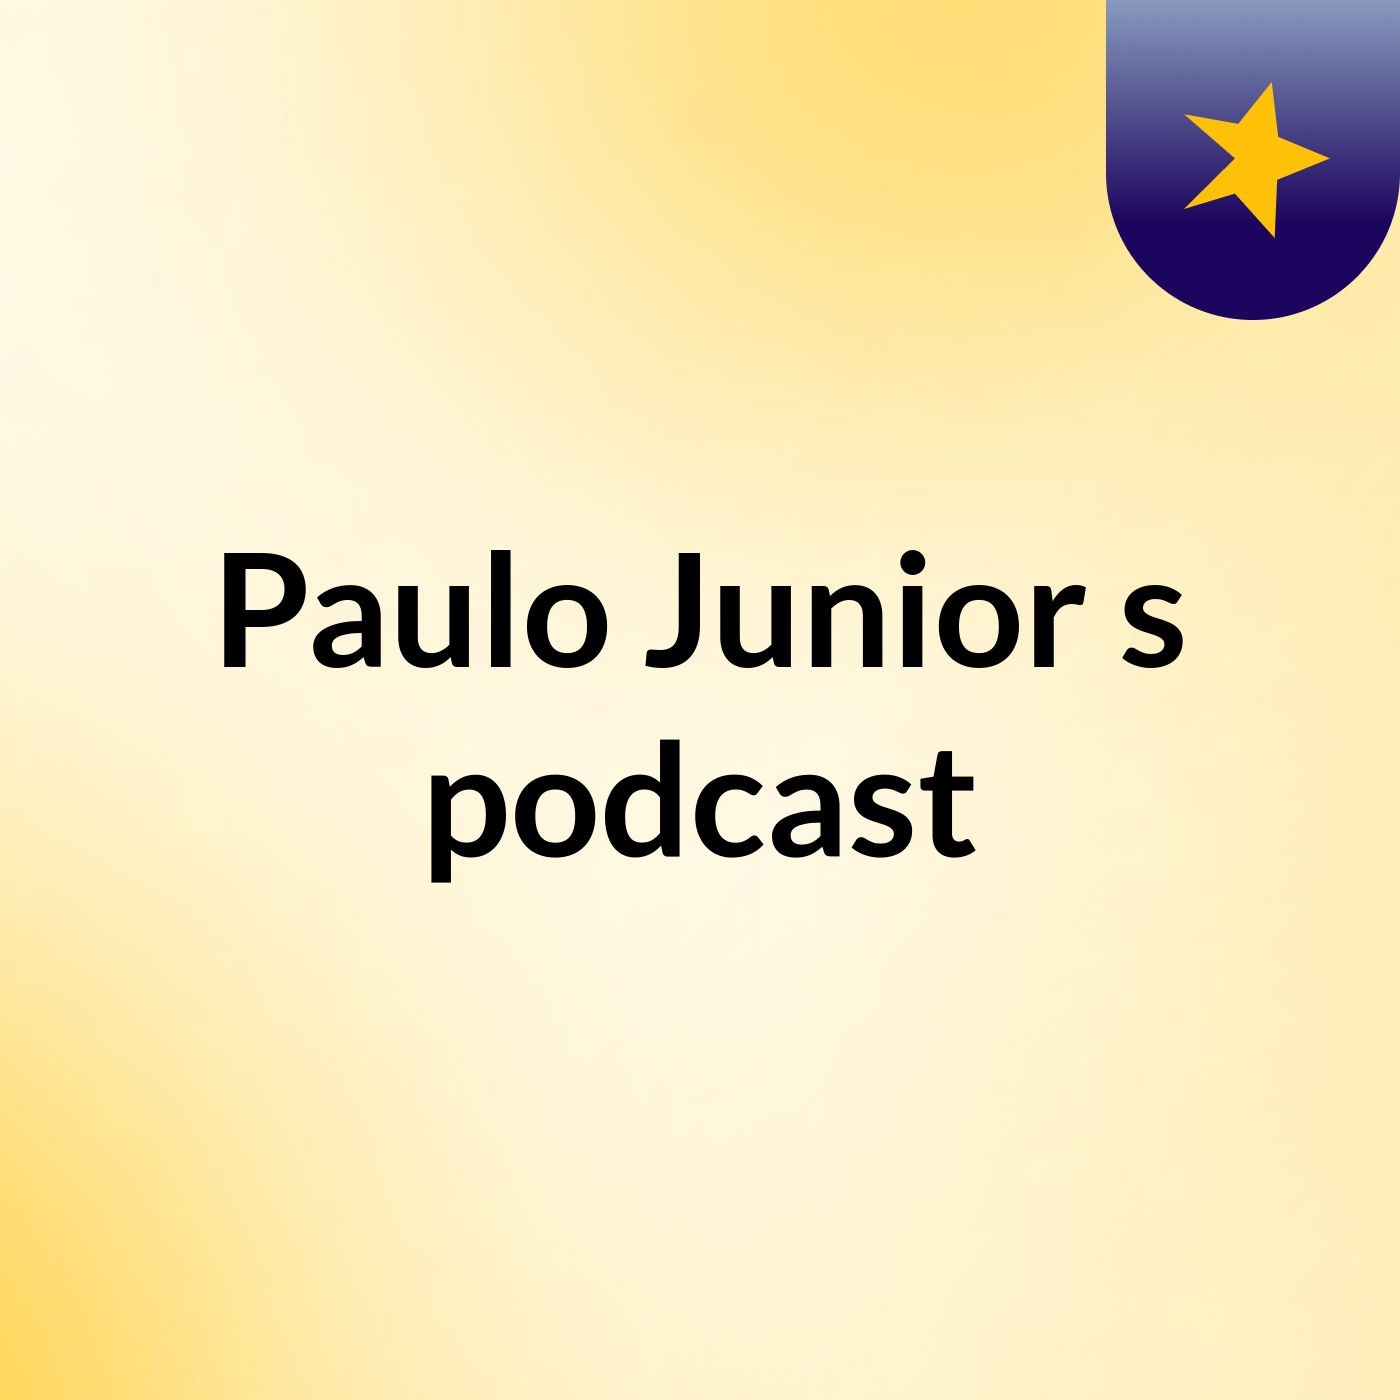 Paulo Junior's podcast